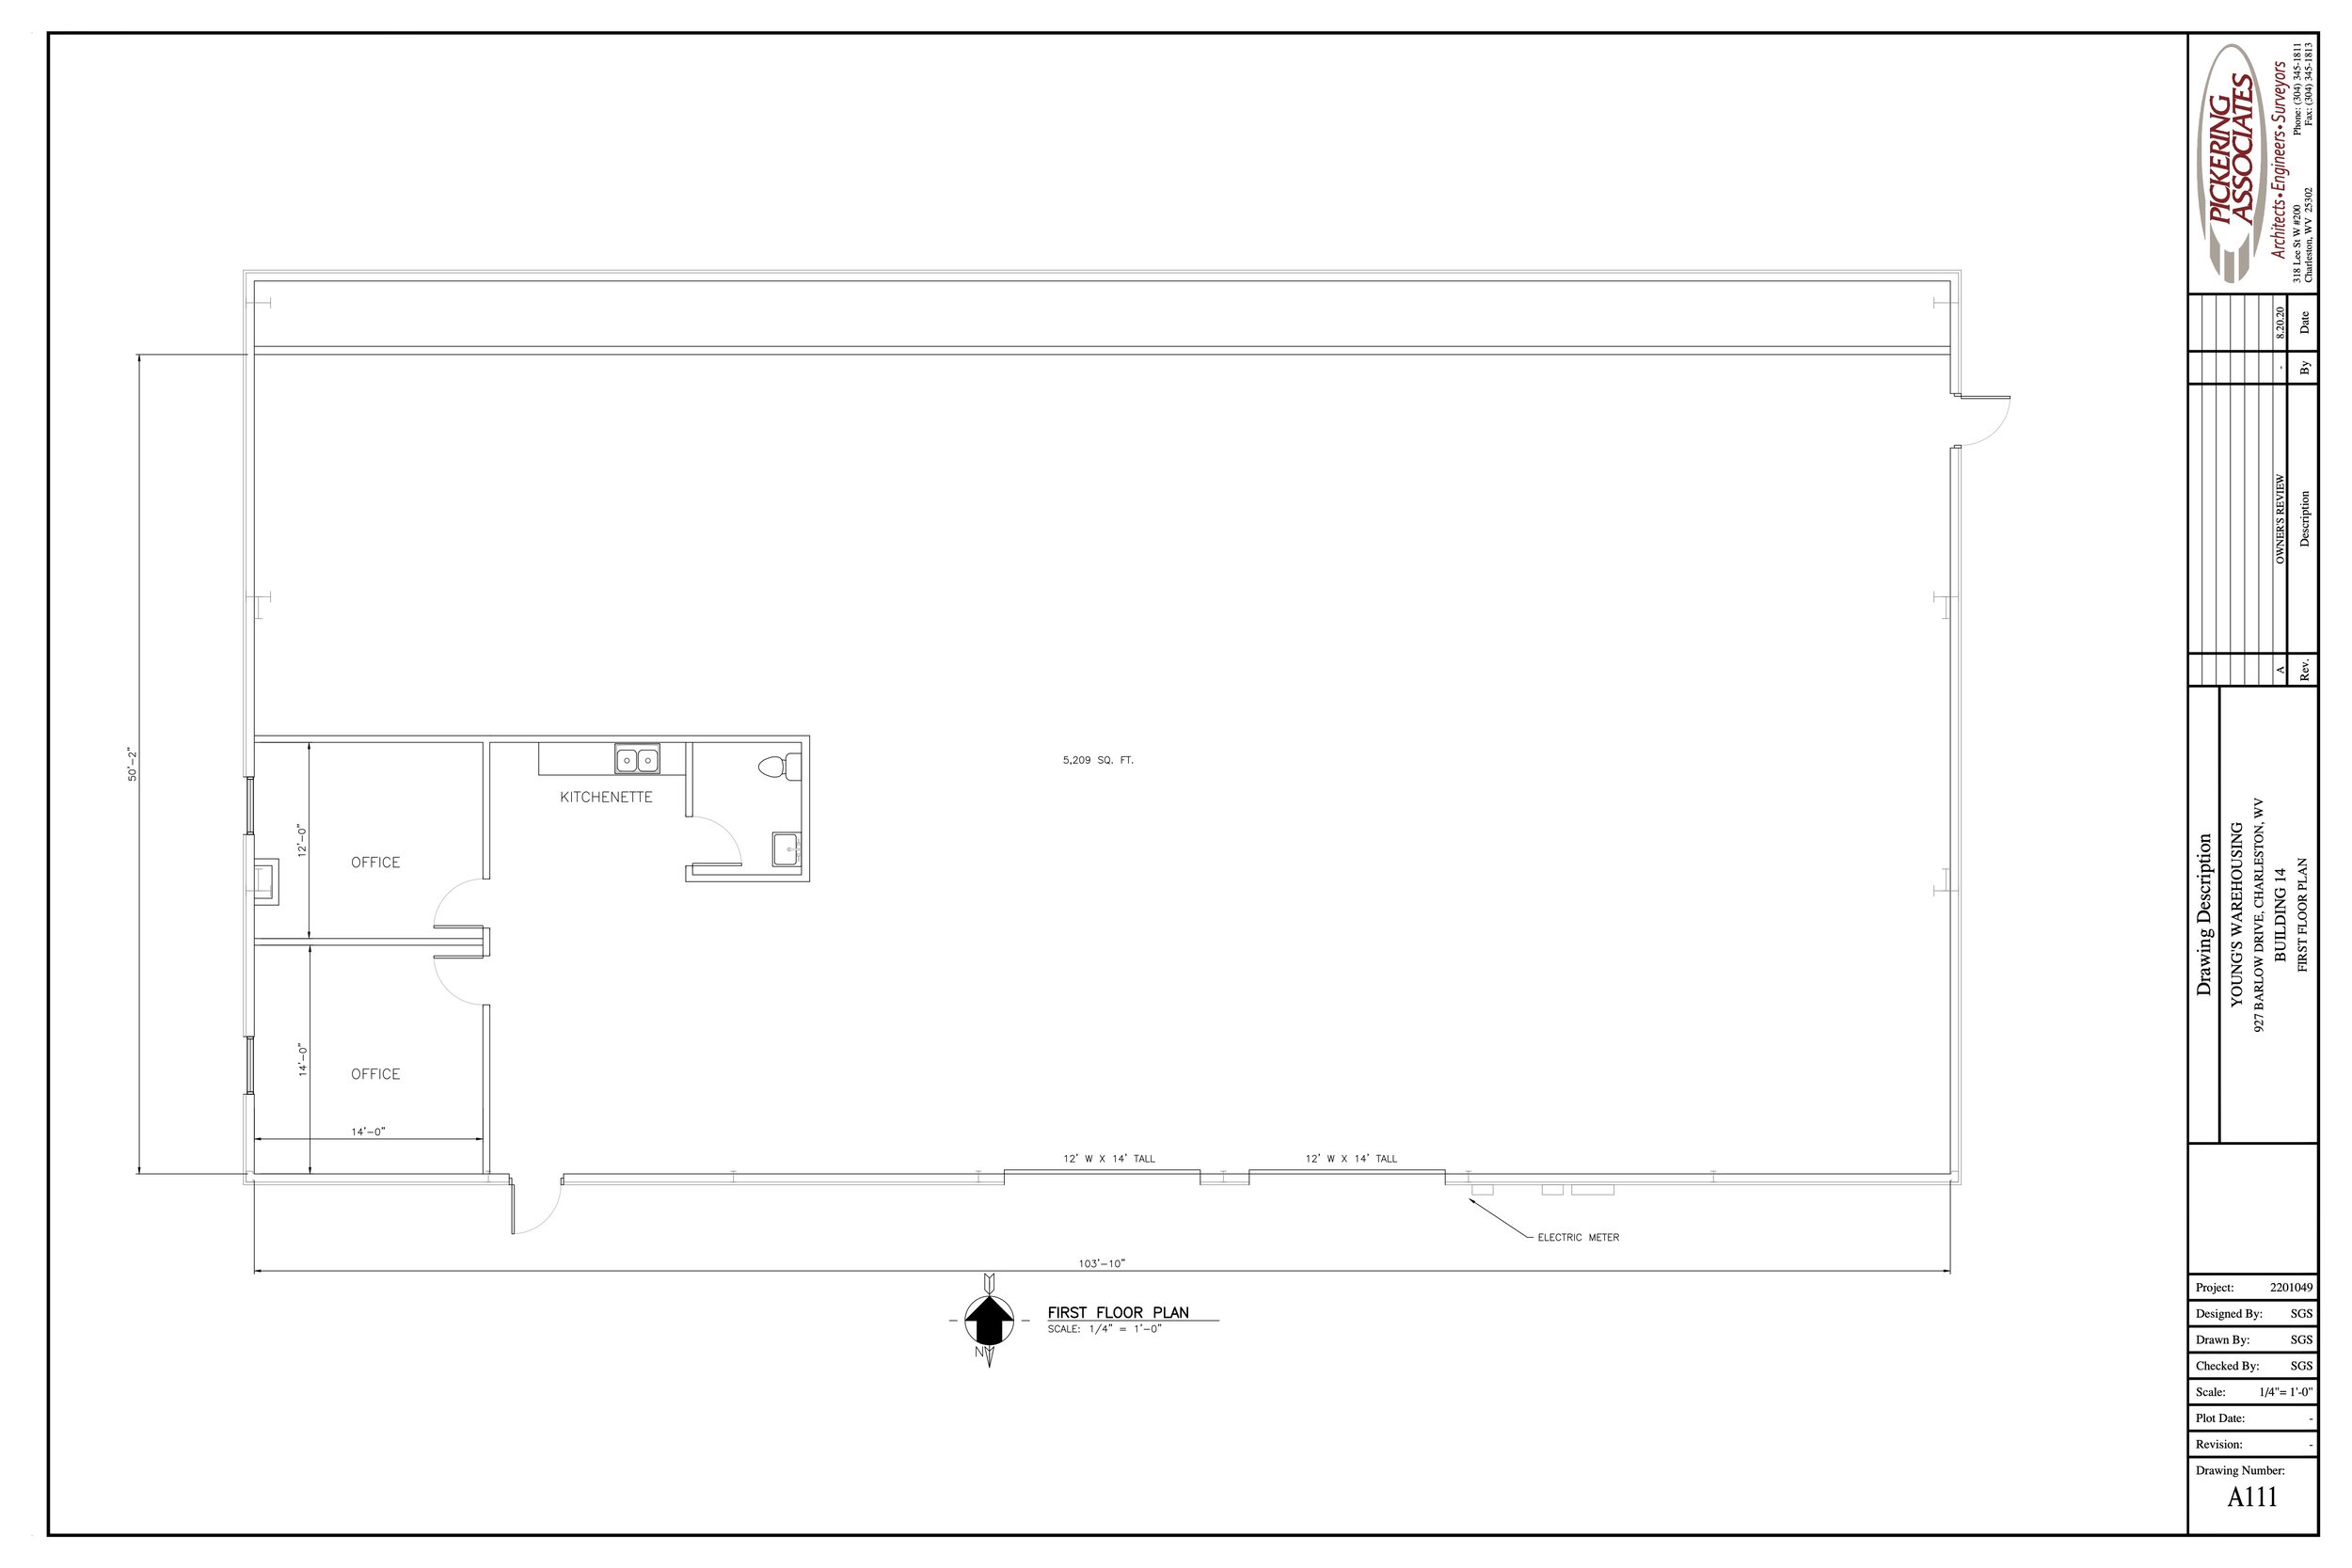 bldg 14 1 space floor plan.jpg